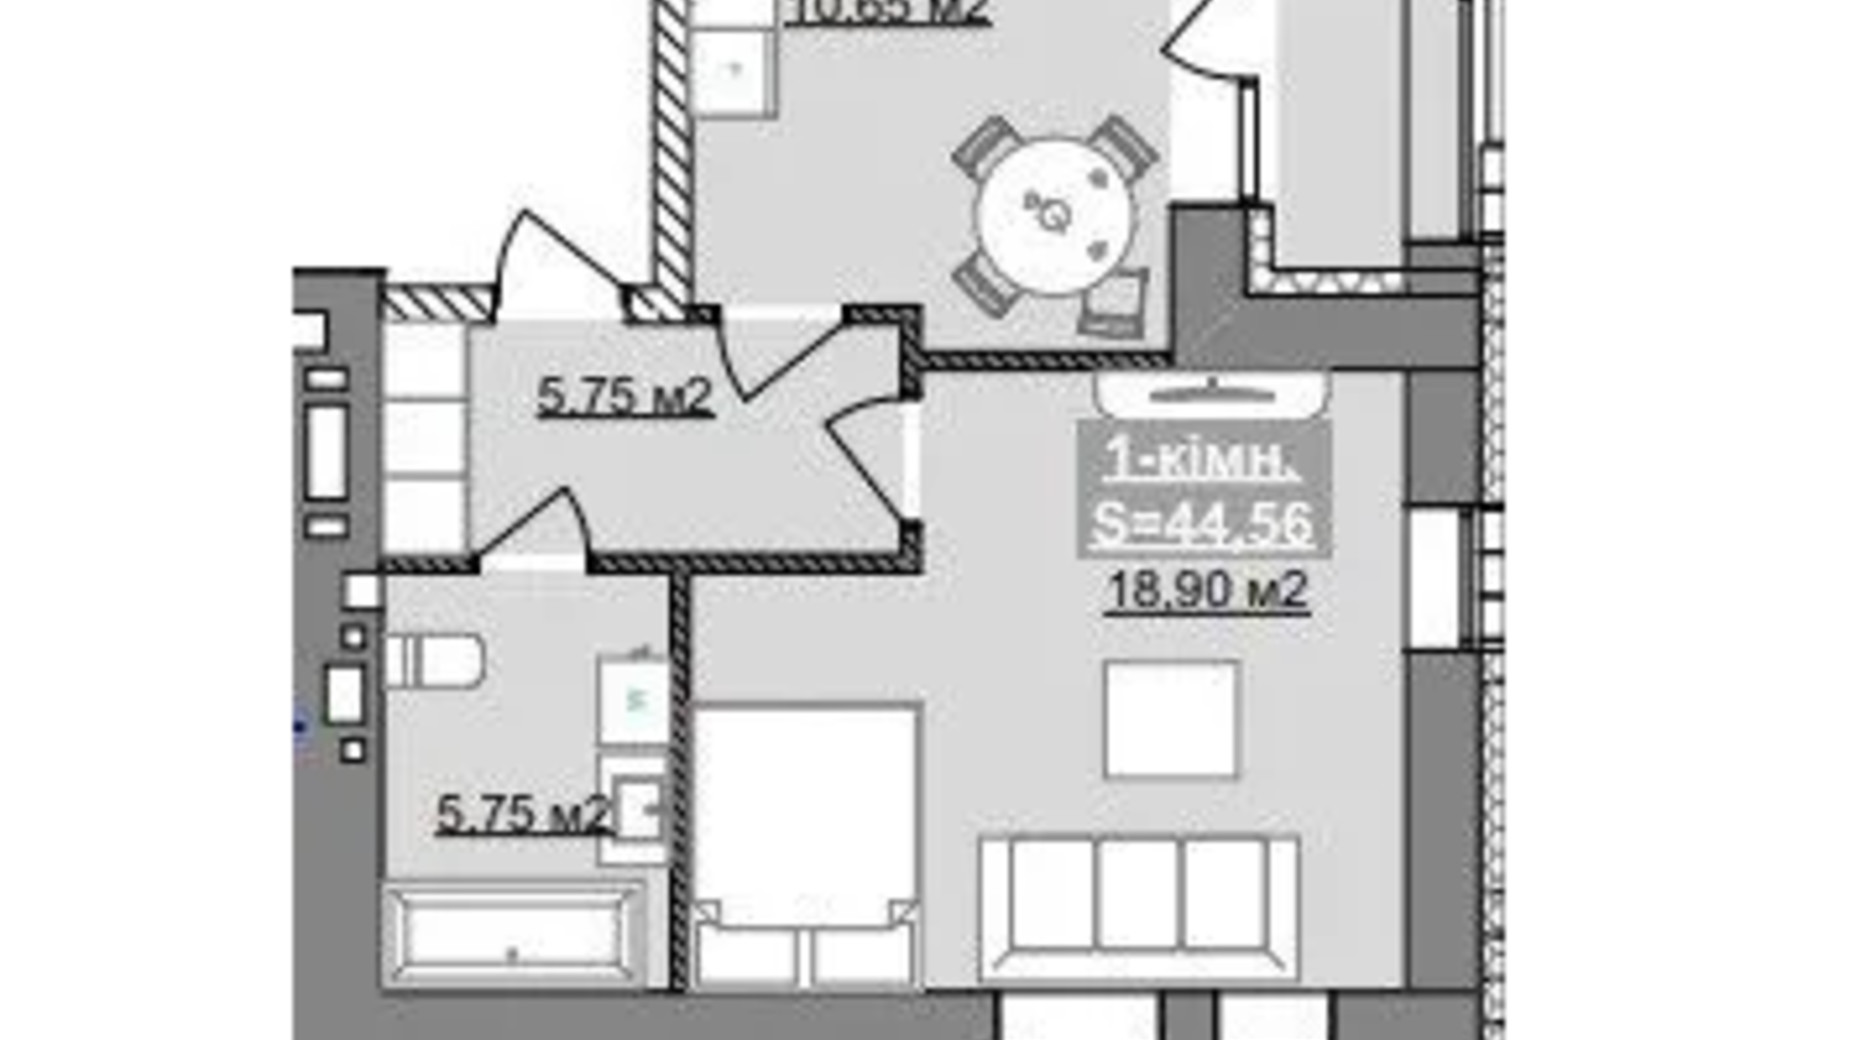 Планування 1-кімнатної квартири в ЖК Паркове містечко (7 черга) 44.56 м², фото 653520